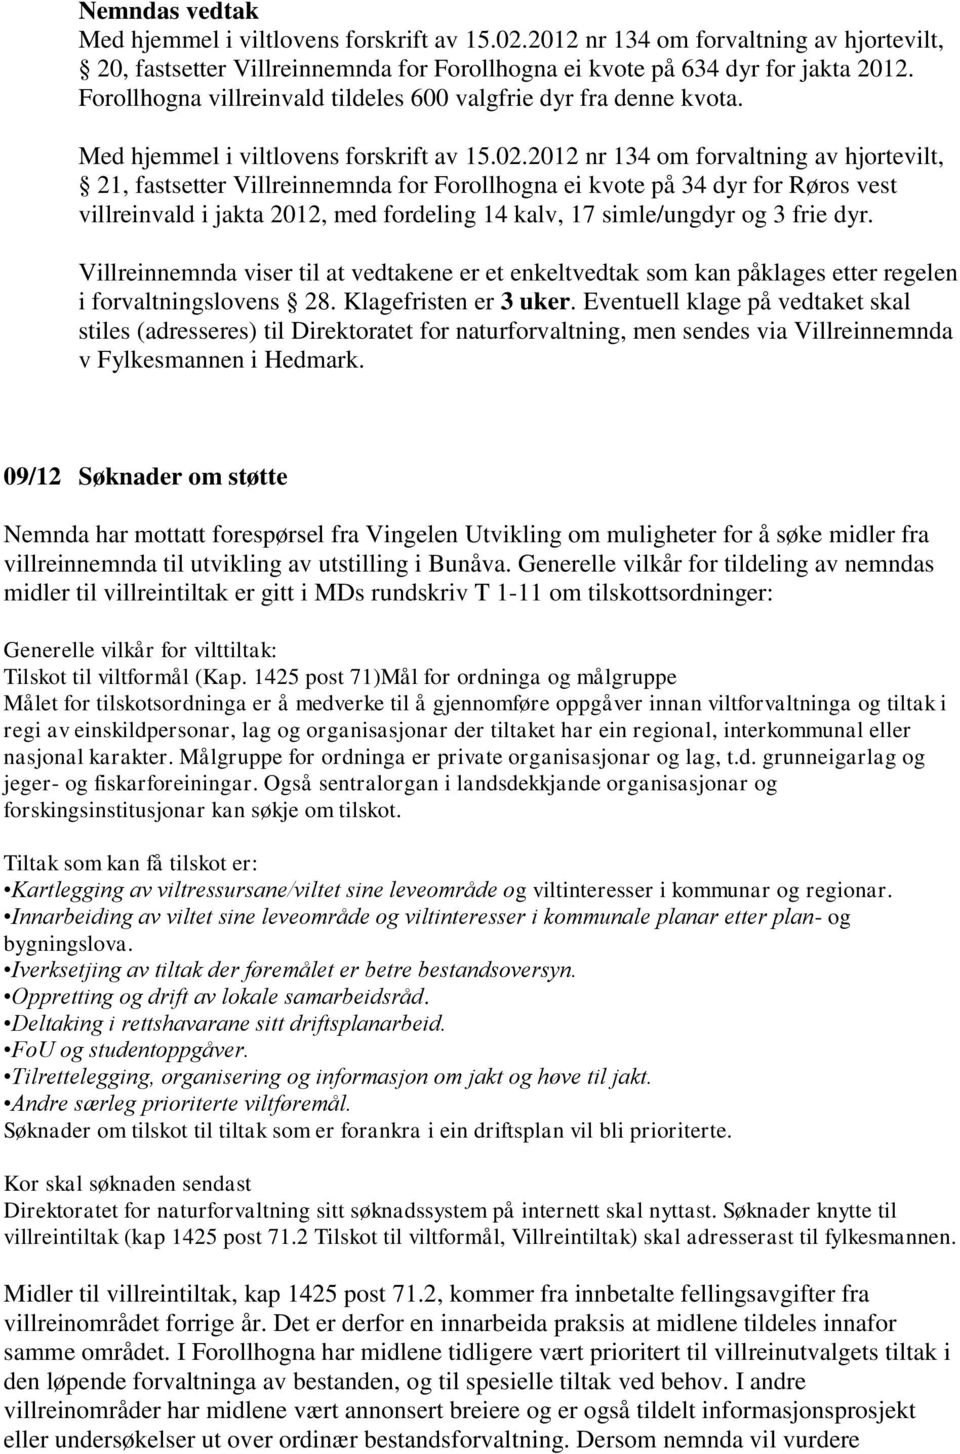 2012 nr 134 om forvaltning av hjortevilt, 21, fastsetter Villreinnemnda for Forollhogna ei kvote på 34 dyr for Røros vest villreinvald i jakta 2012, med fordeling 14 kalv, 17 simle/ungdyr og 3 frie